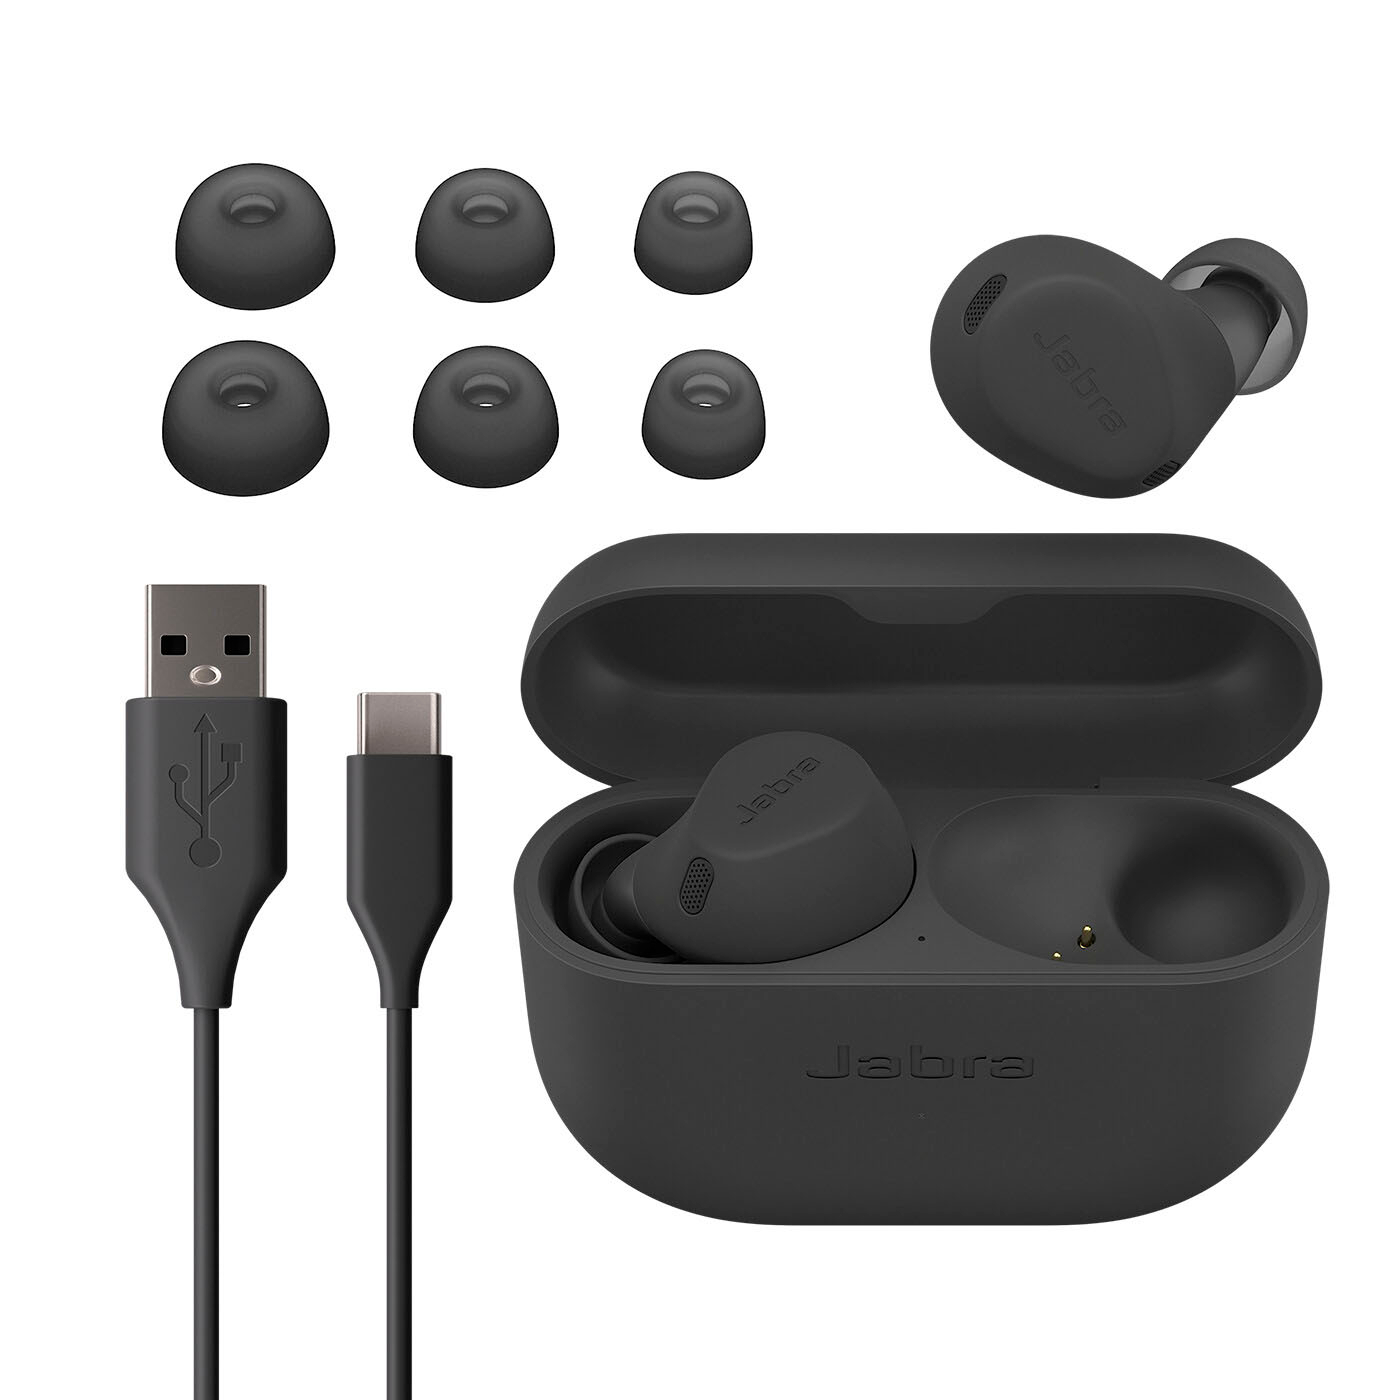 Jabra Elite 4 True Wireless Noise Cancelling In-ear Headphones Light Beige  100-99183002-99 - Best Buy